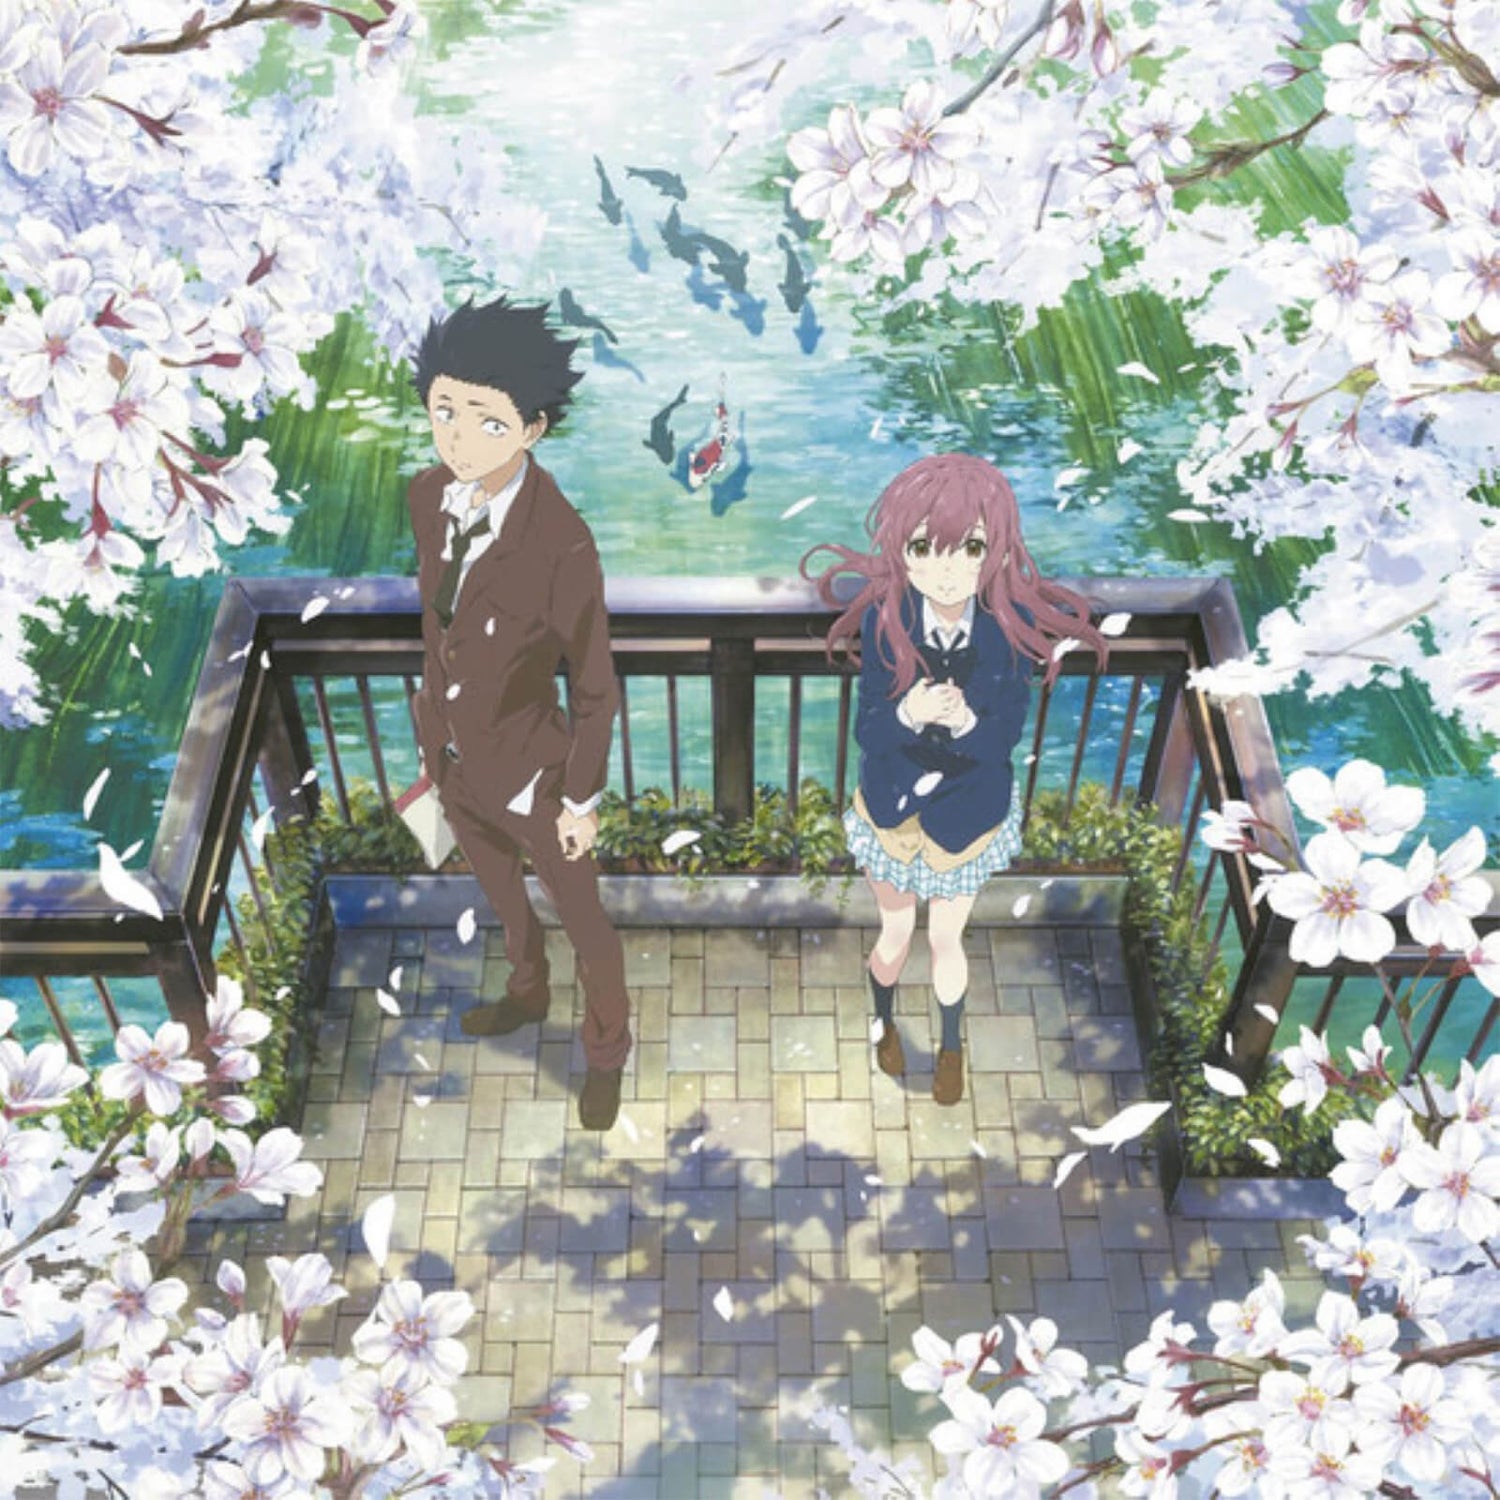 Anime Limited - A Silent Voice (Originele Soundtrack) 180g 2xLP